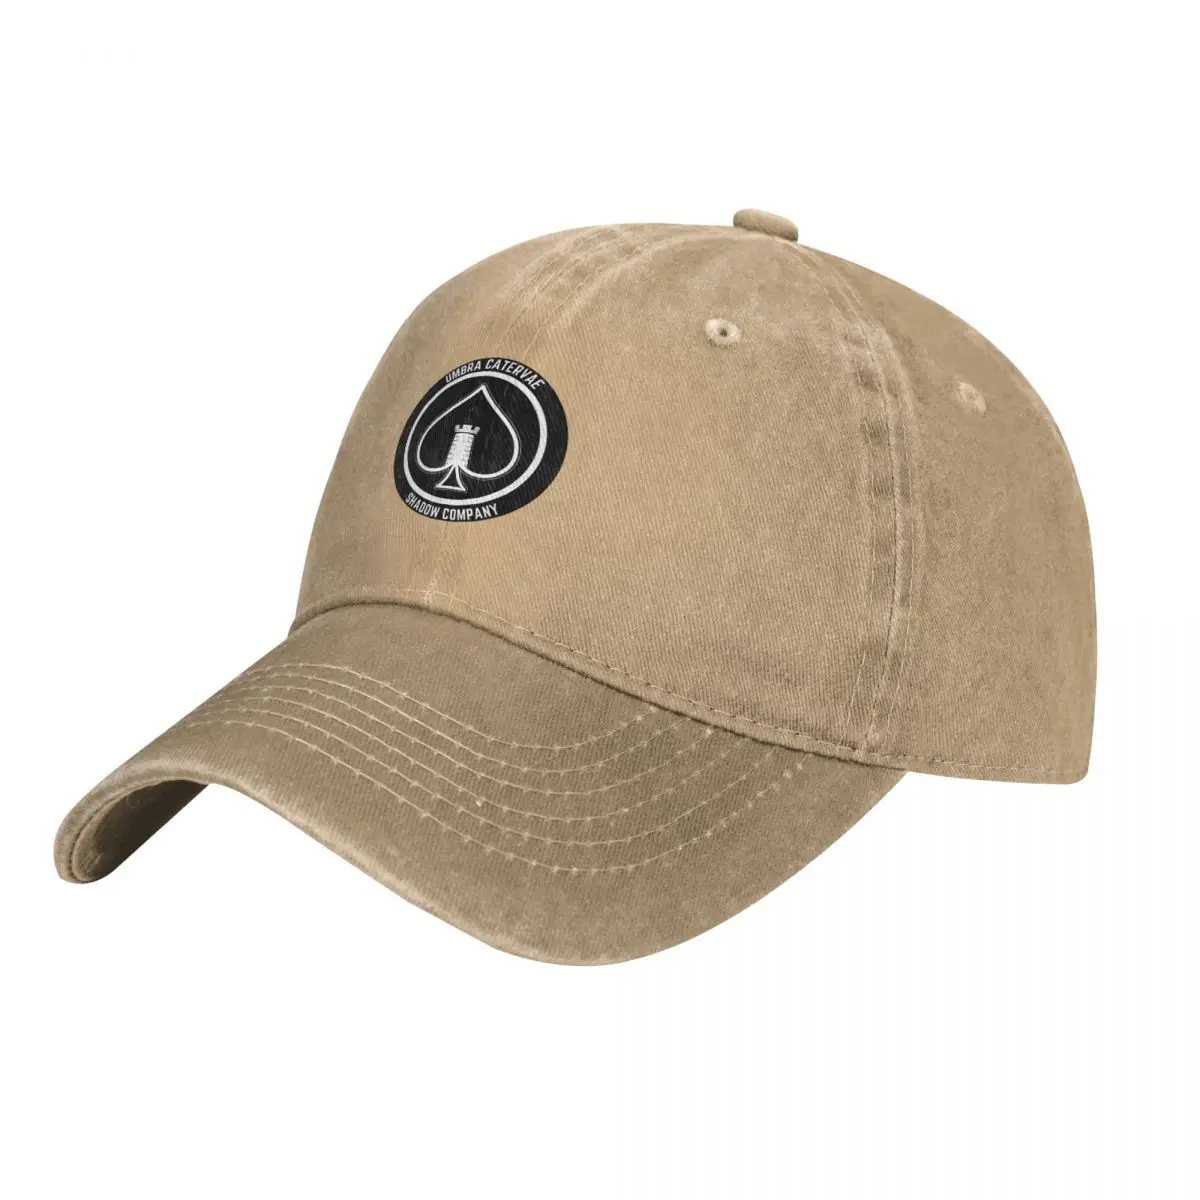 Shadow Company Emblem Cap Cowboy Hat bucket hat Sun cap military tactica... - £17.09 GBP